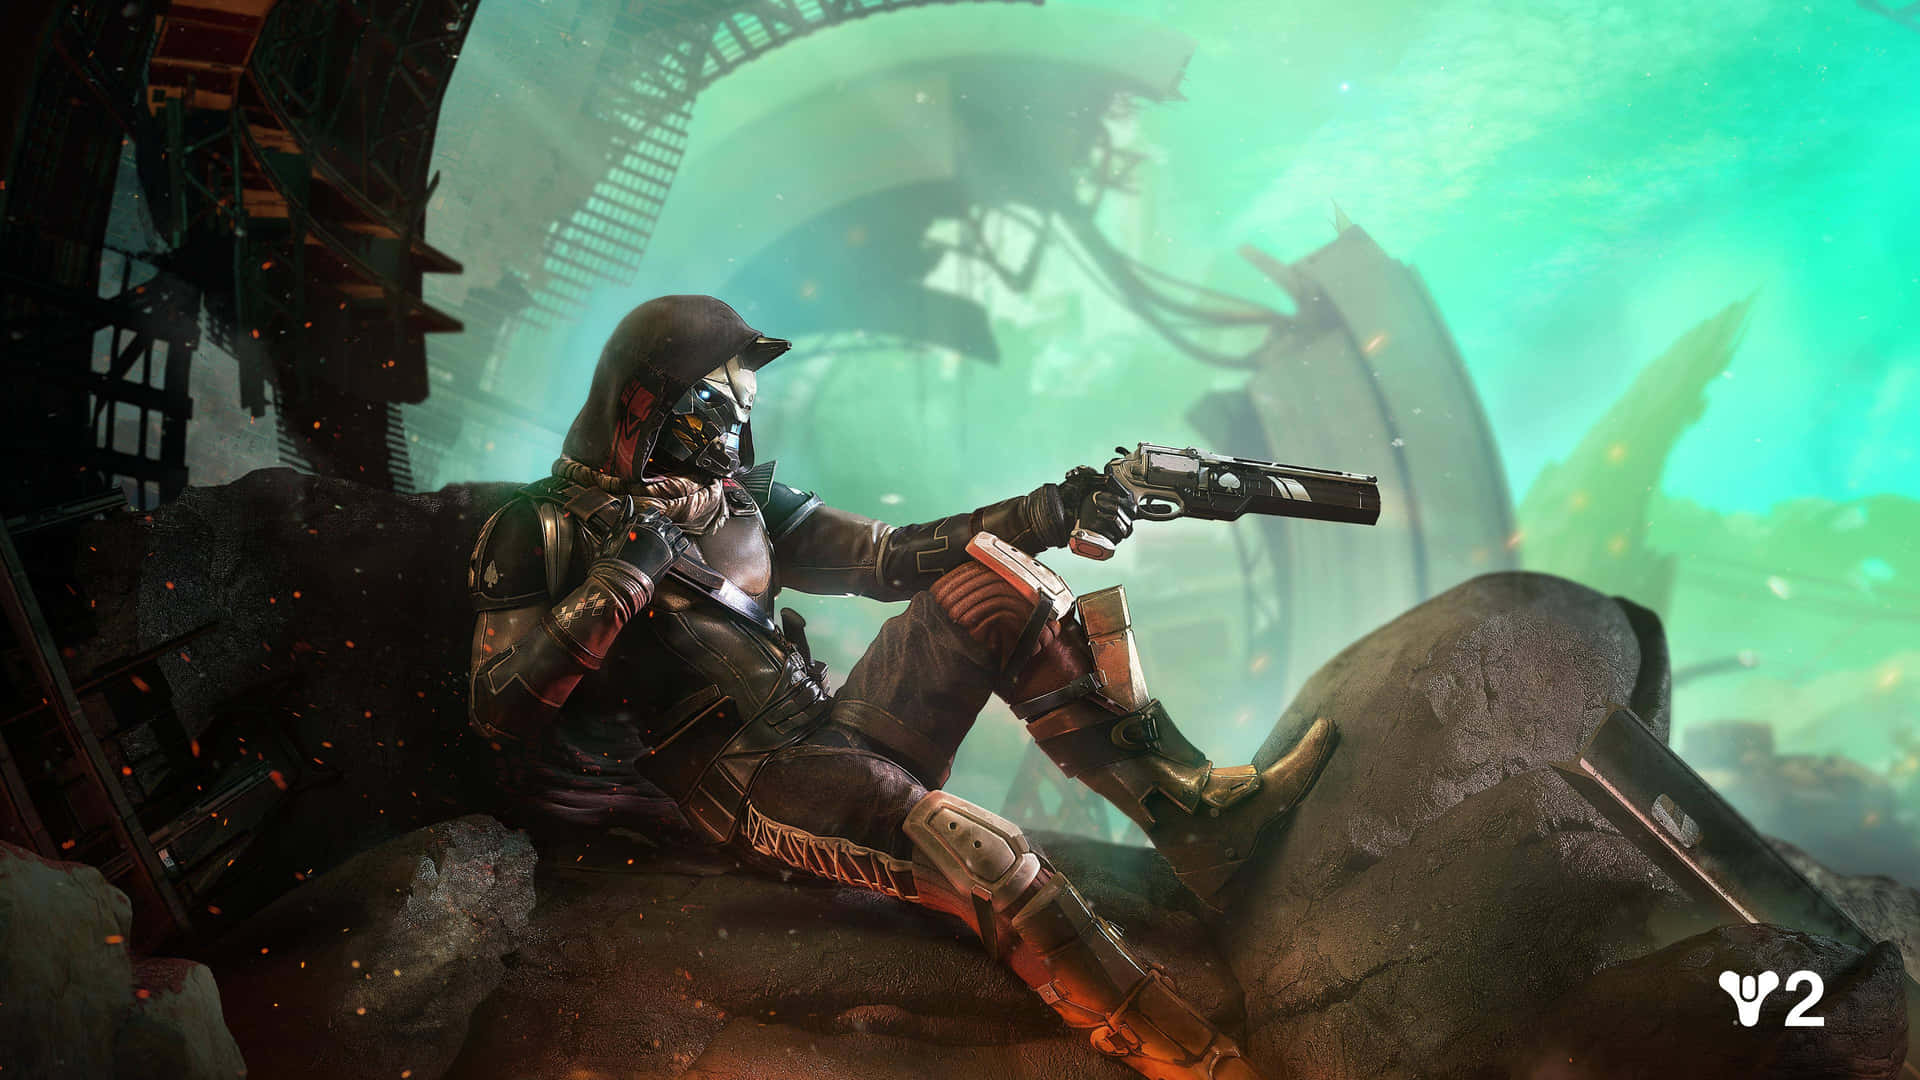 A Hunter in a futuristic, post-apocalyptic world in Destiny 2 Wallpaper